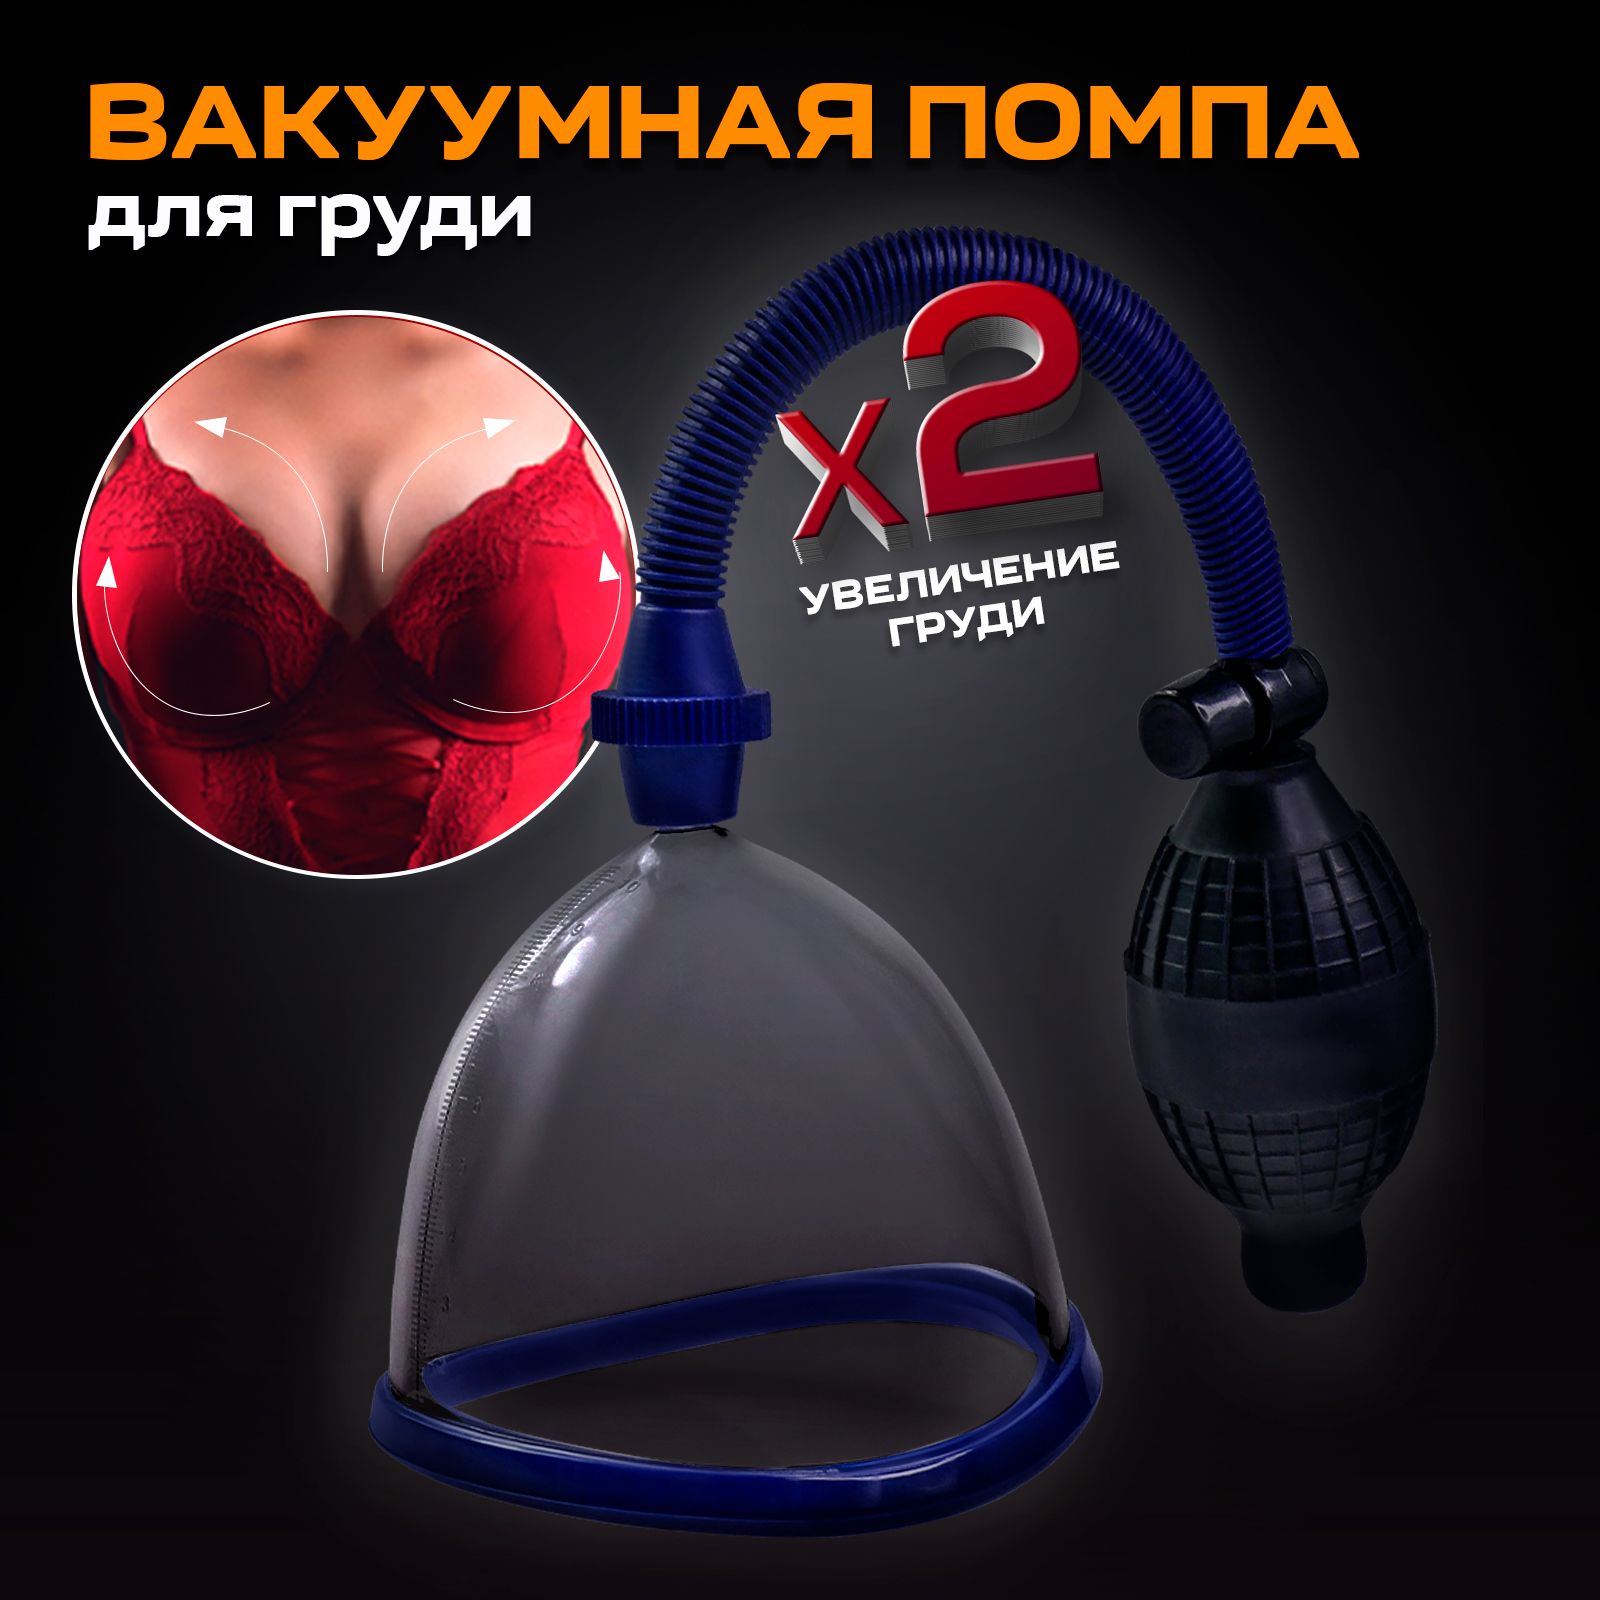 Секс-игрушки для груди и сосков